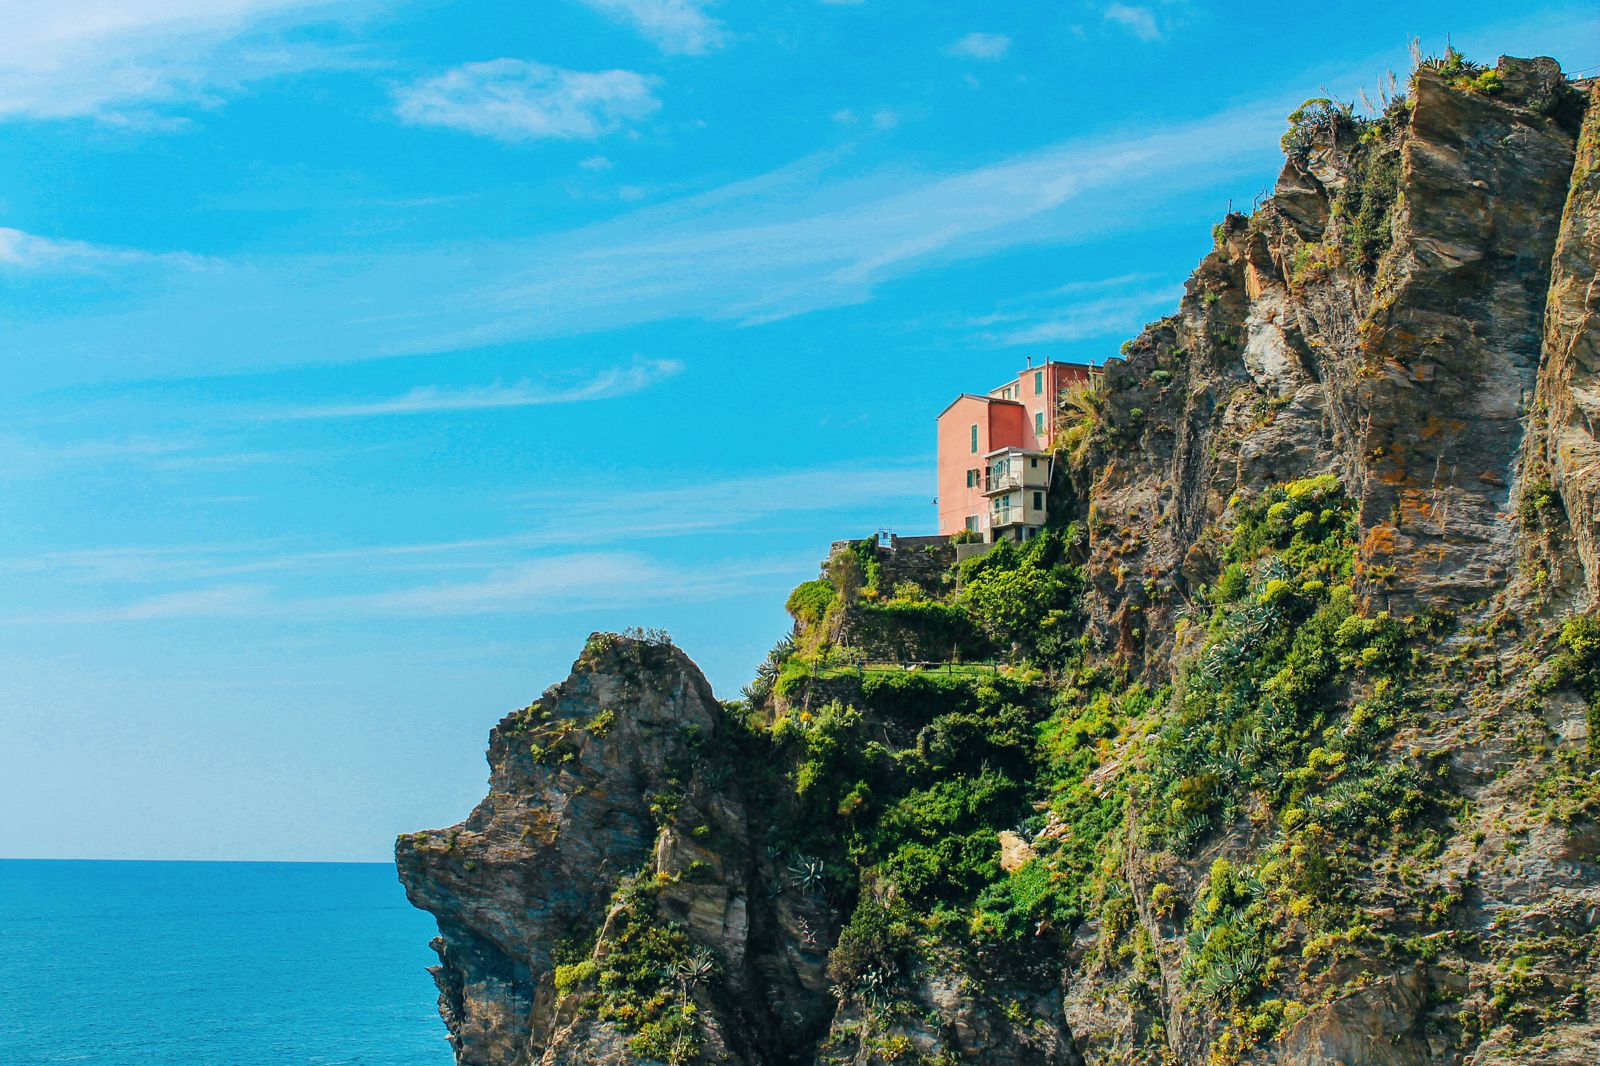 Corniglia in Cinque Terre, Italy - The Photo Diary! [3 of 5] (19)